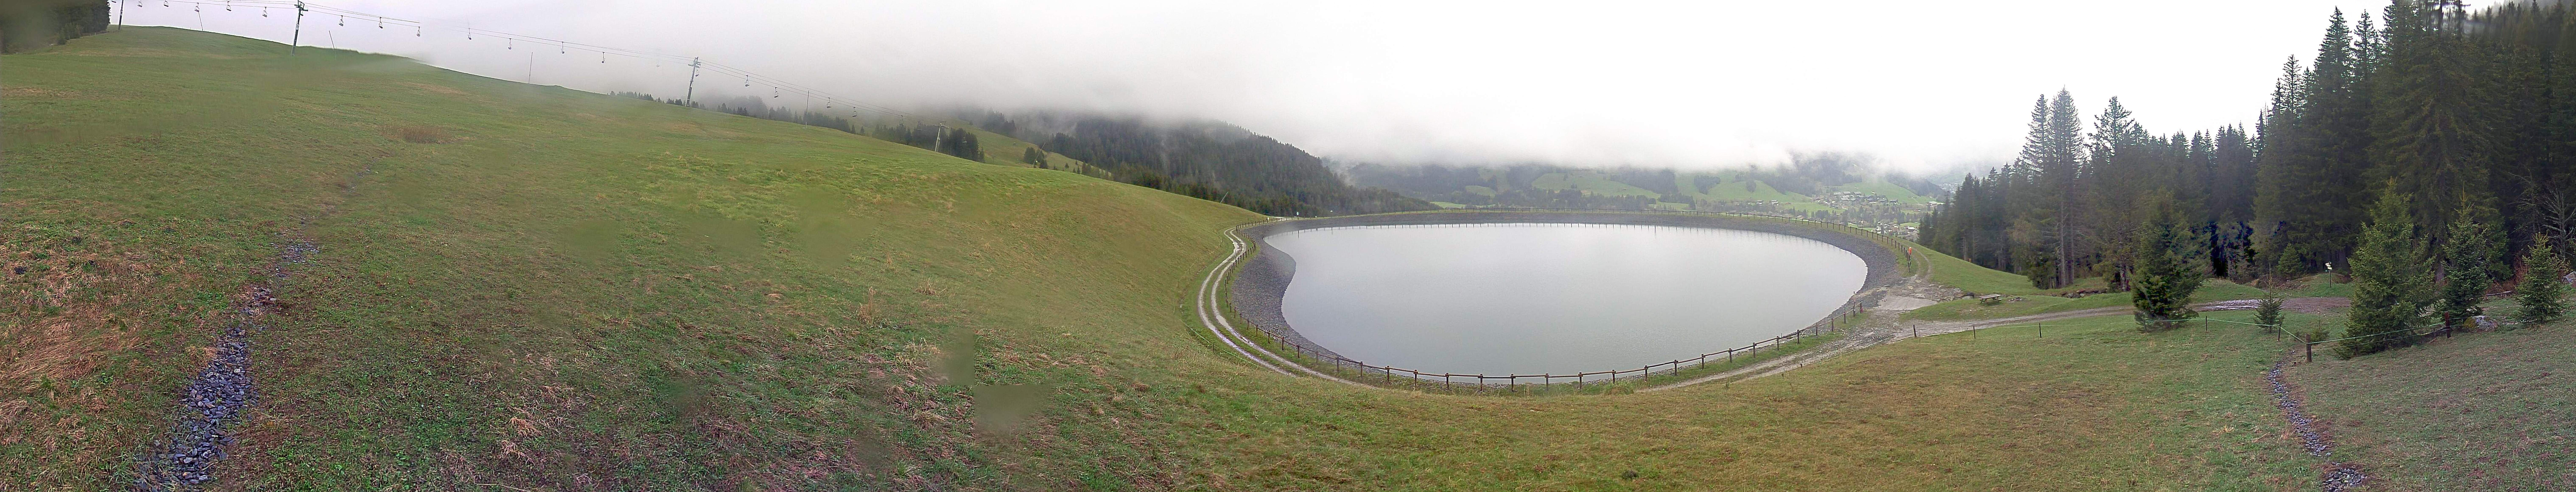 Webcam de Lac d'arbois